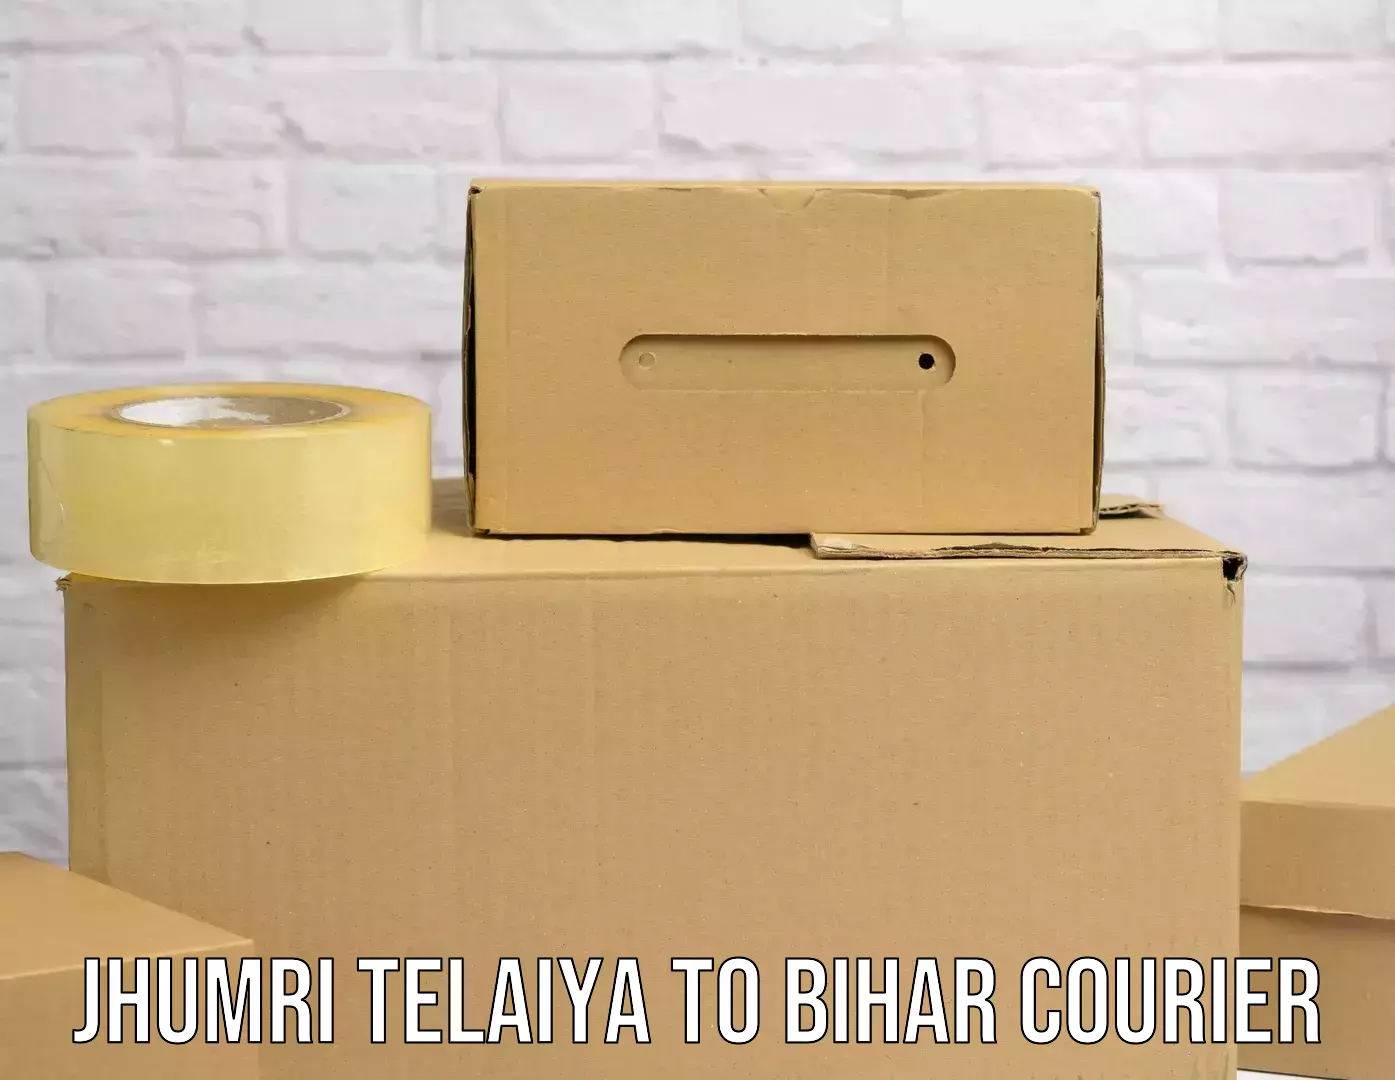 Global shipping networks Jhumri Telaiya to Bihar